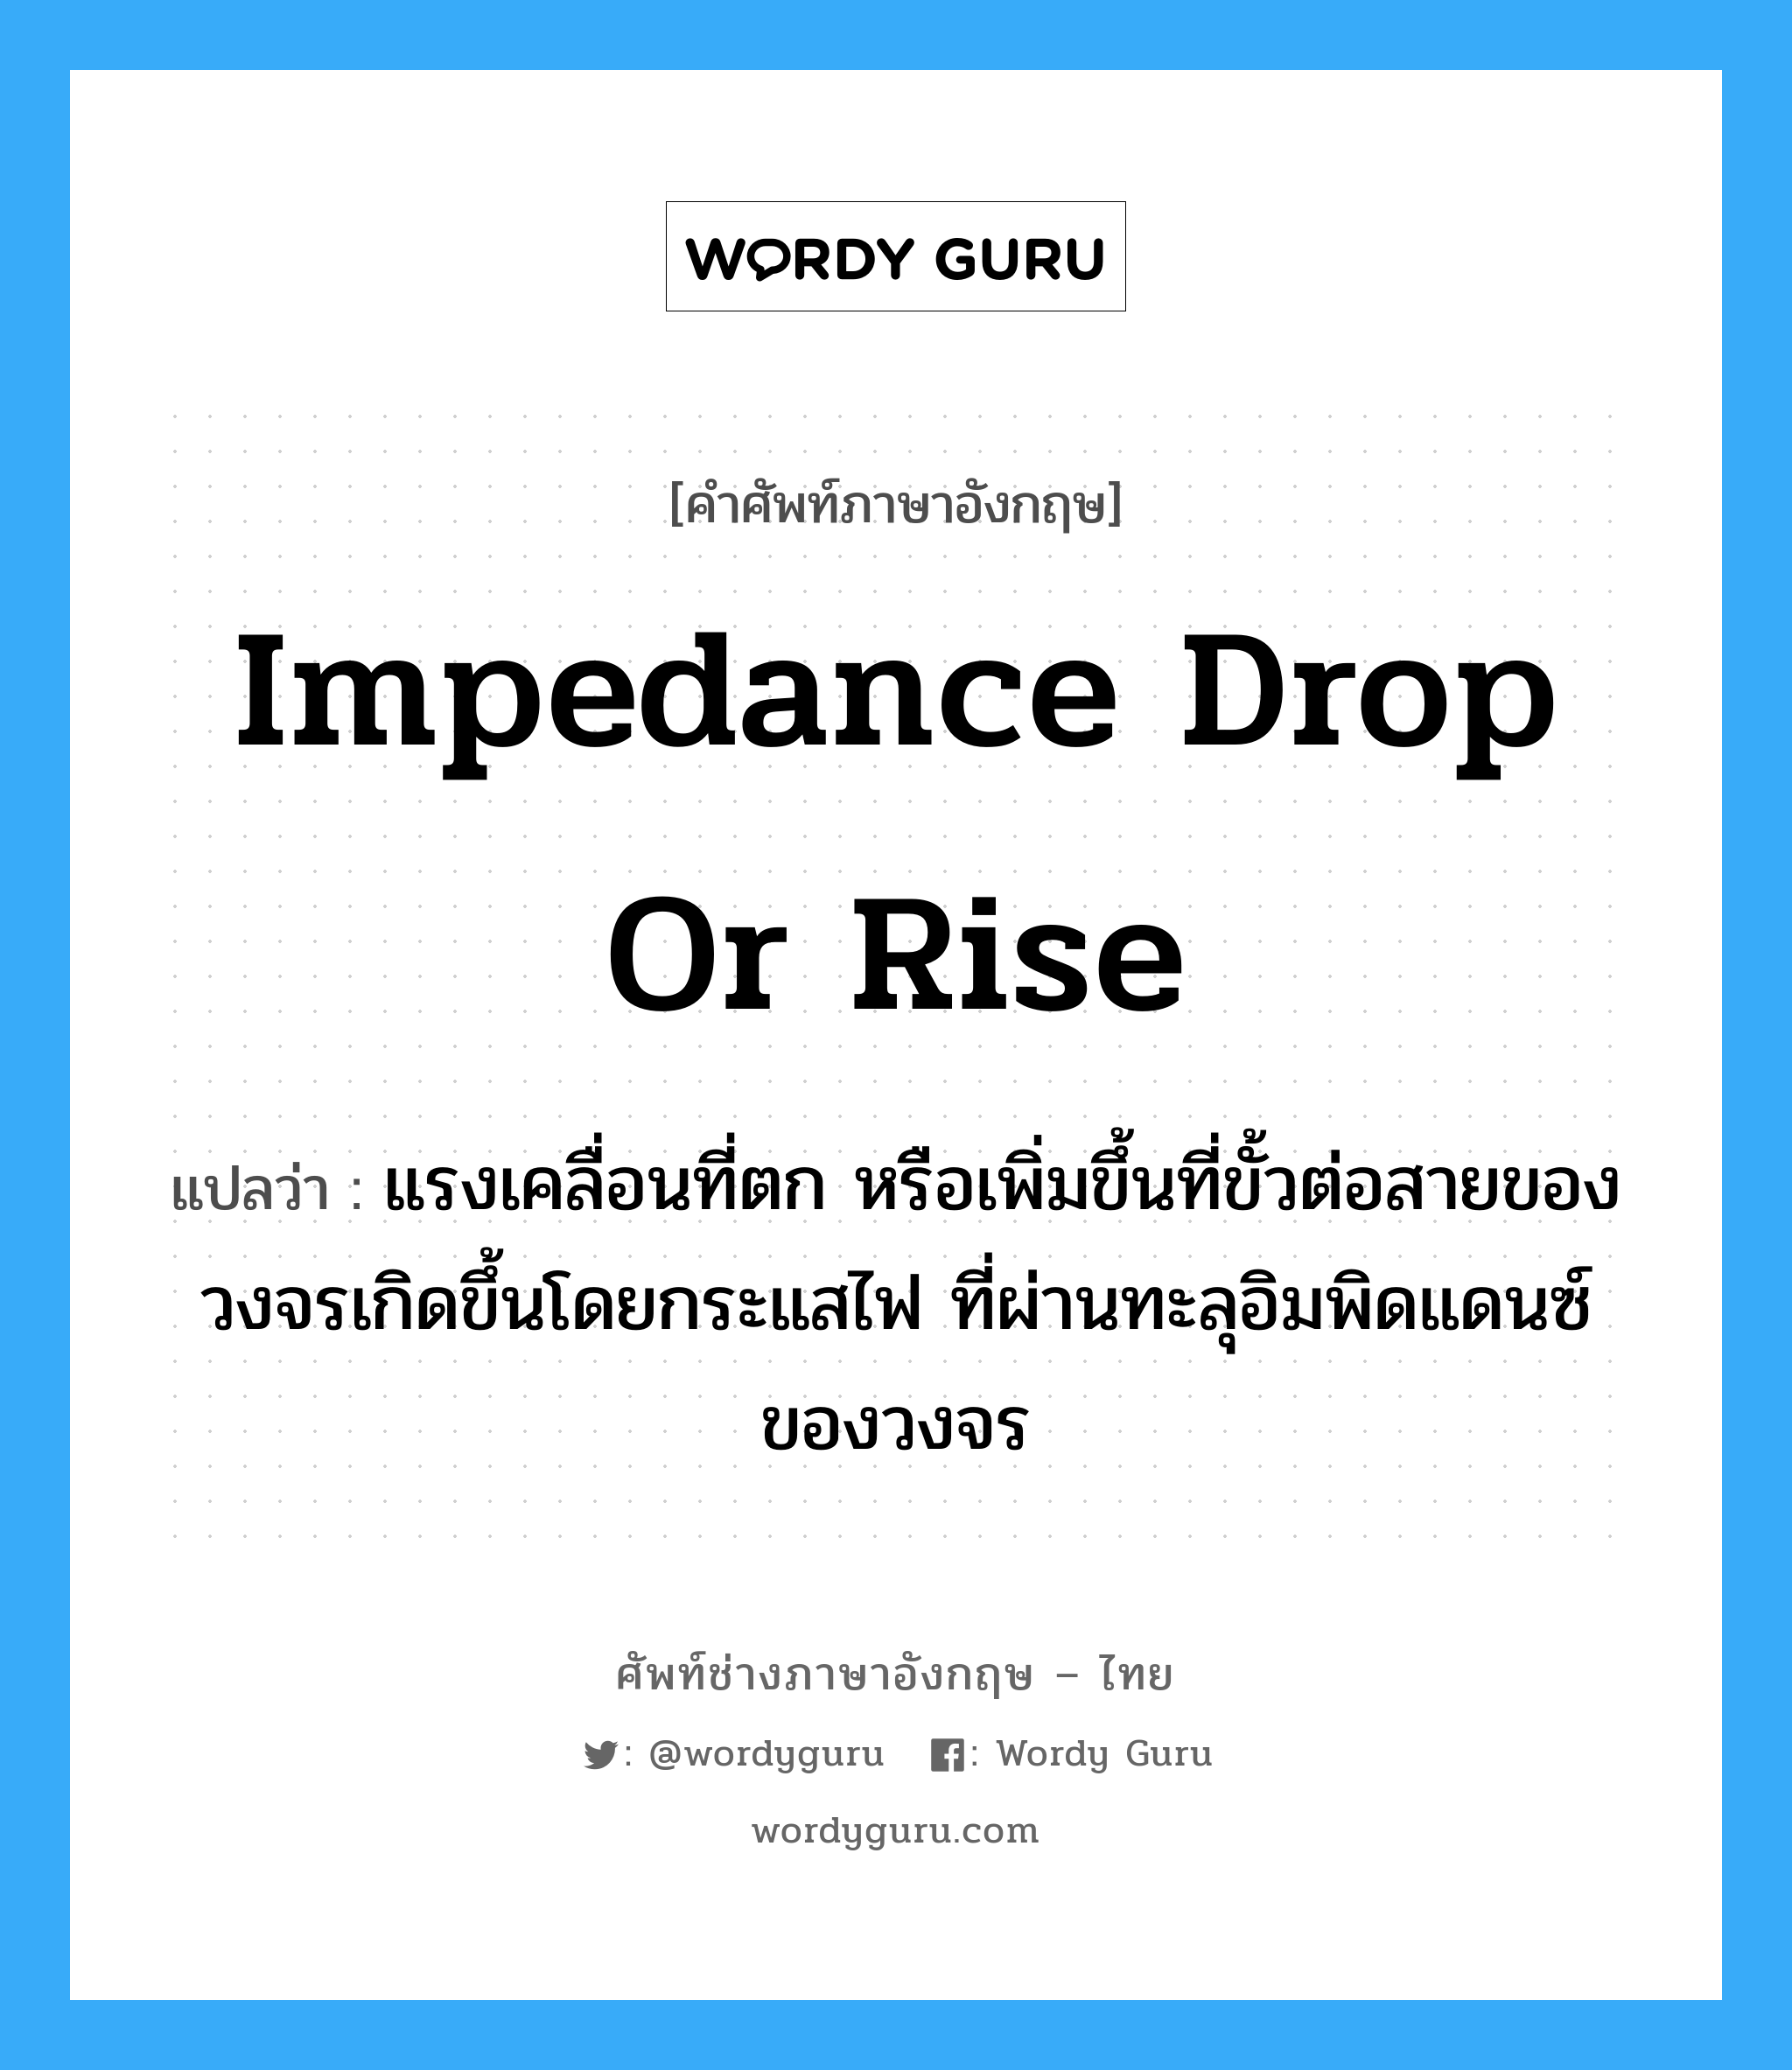 impedance drop or rise แปลว่า?, คำศัพท์ช่างภาษาอังกฤษ - ไทย impedance drop or rise คำศัพท์ภาษาอังกฤษ impedance drop or rise แปลว่า แรงเคลื่อนที่ตก หรือเพิ่มขึ้นที่ขั้วต่อสายของวงจรเกิดขึ้นโดยกระแสไฟ ที่ผ่านทะลุอิมพิดแดนซ์ของวงจร